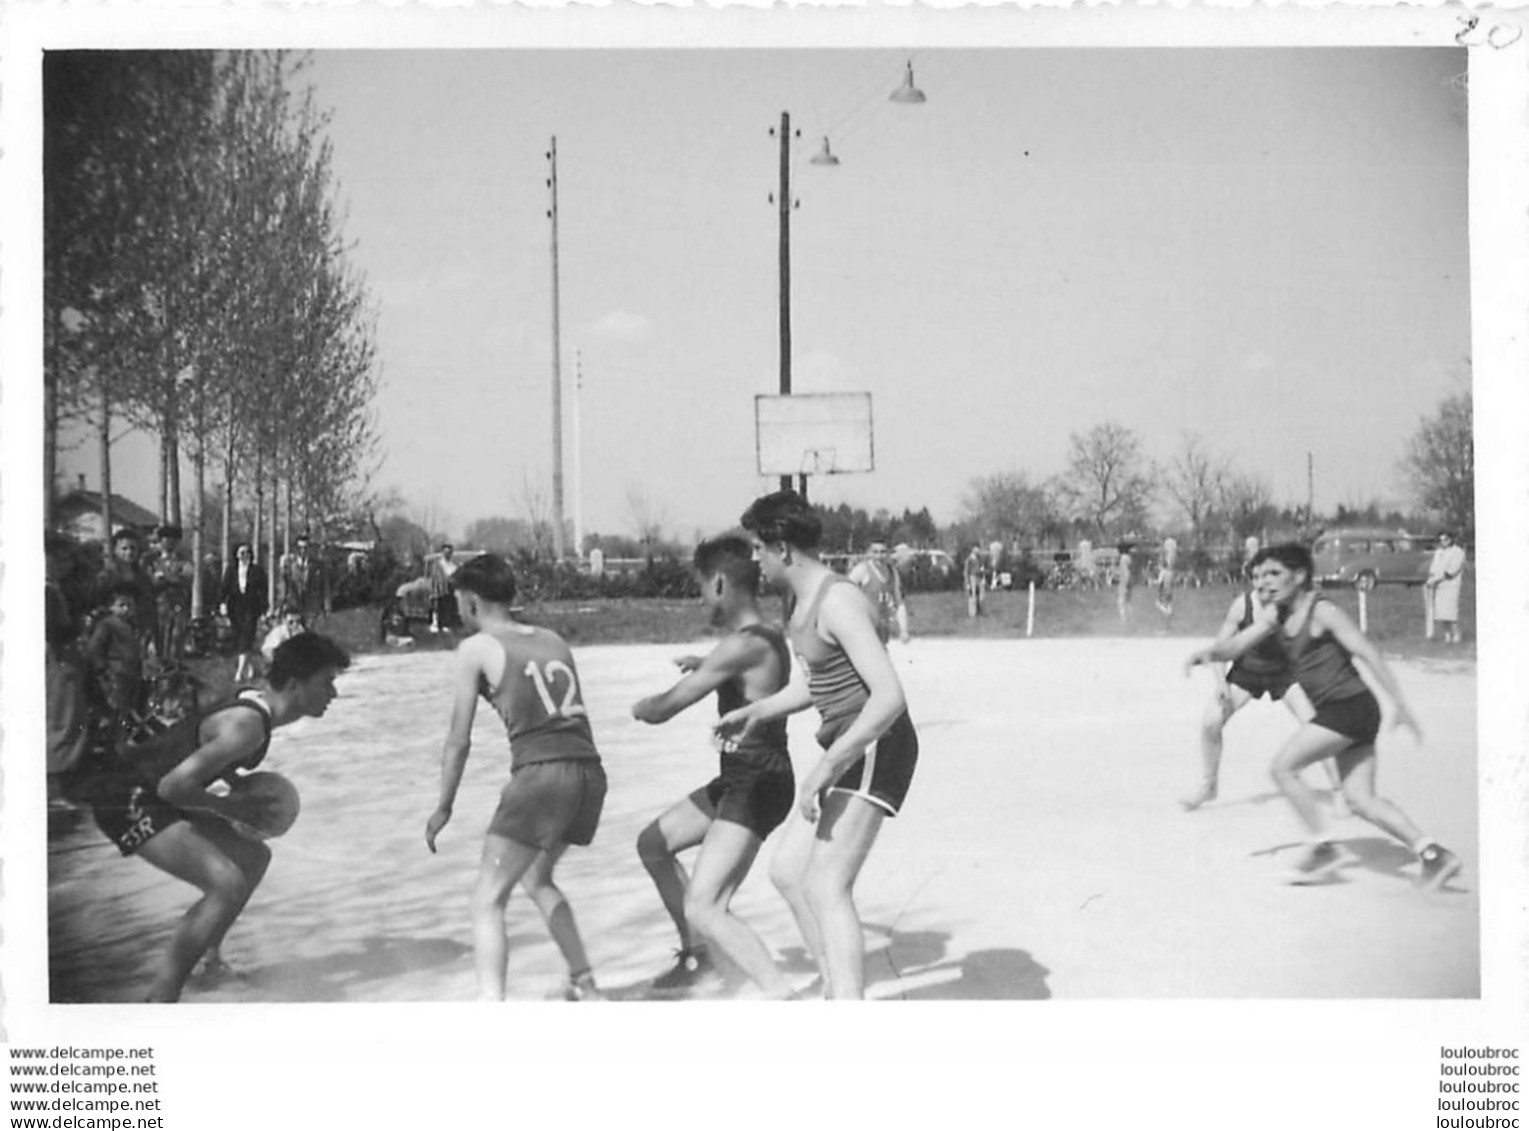 MATCH DE BASKETBALL BASKET LES ABRETS ISERE PHOTO ORIGINALE  12 X 8 CM CACHET PHOTOGRAPHE AU VERSO - Sports